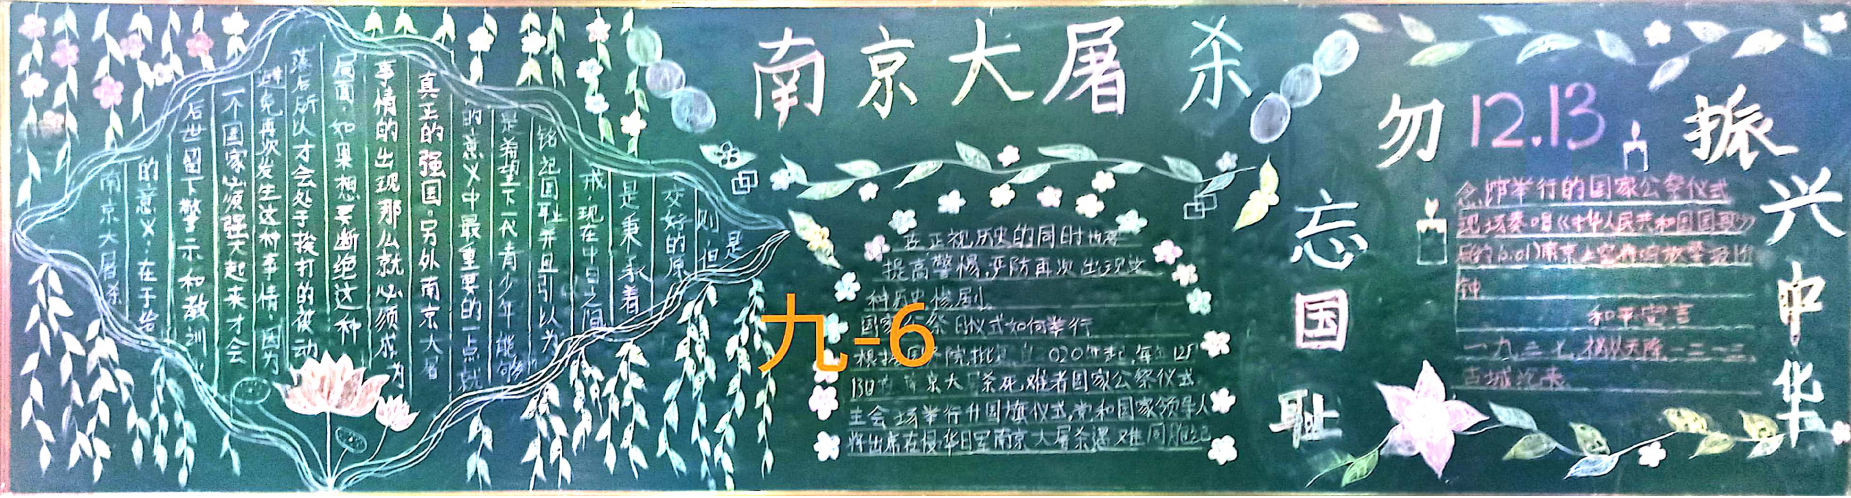 勿忘国耻纪念南京大屠杀九年级黑板报展示 写美篇       为进一步